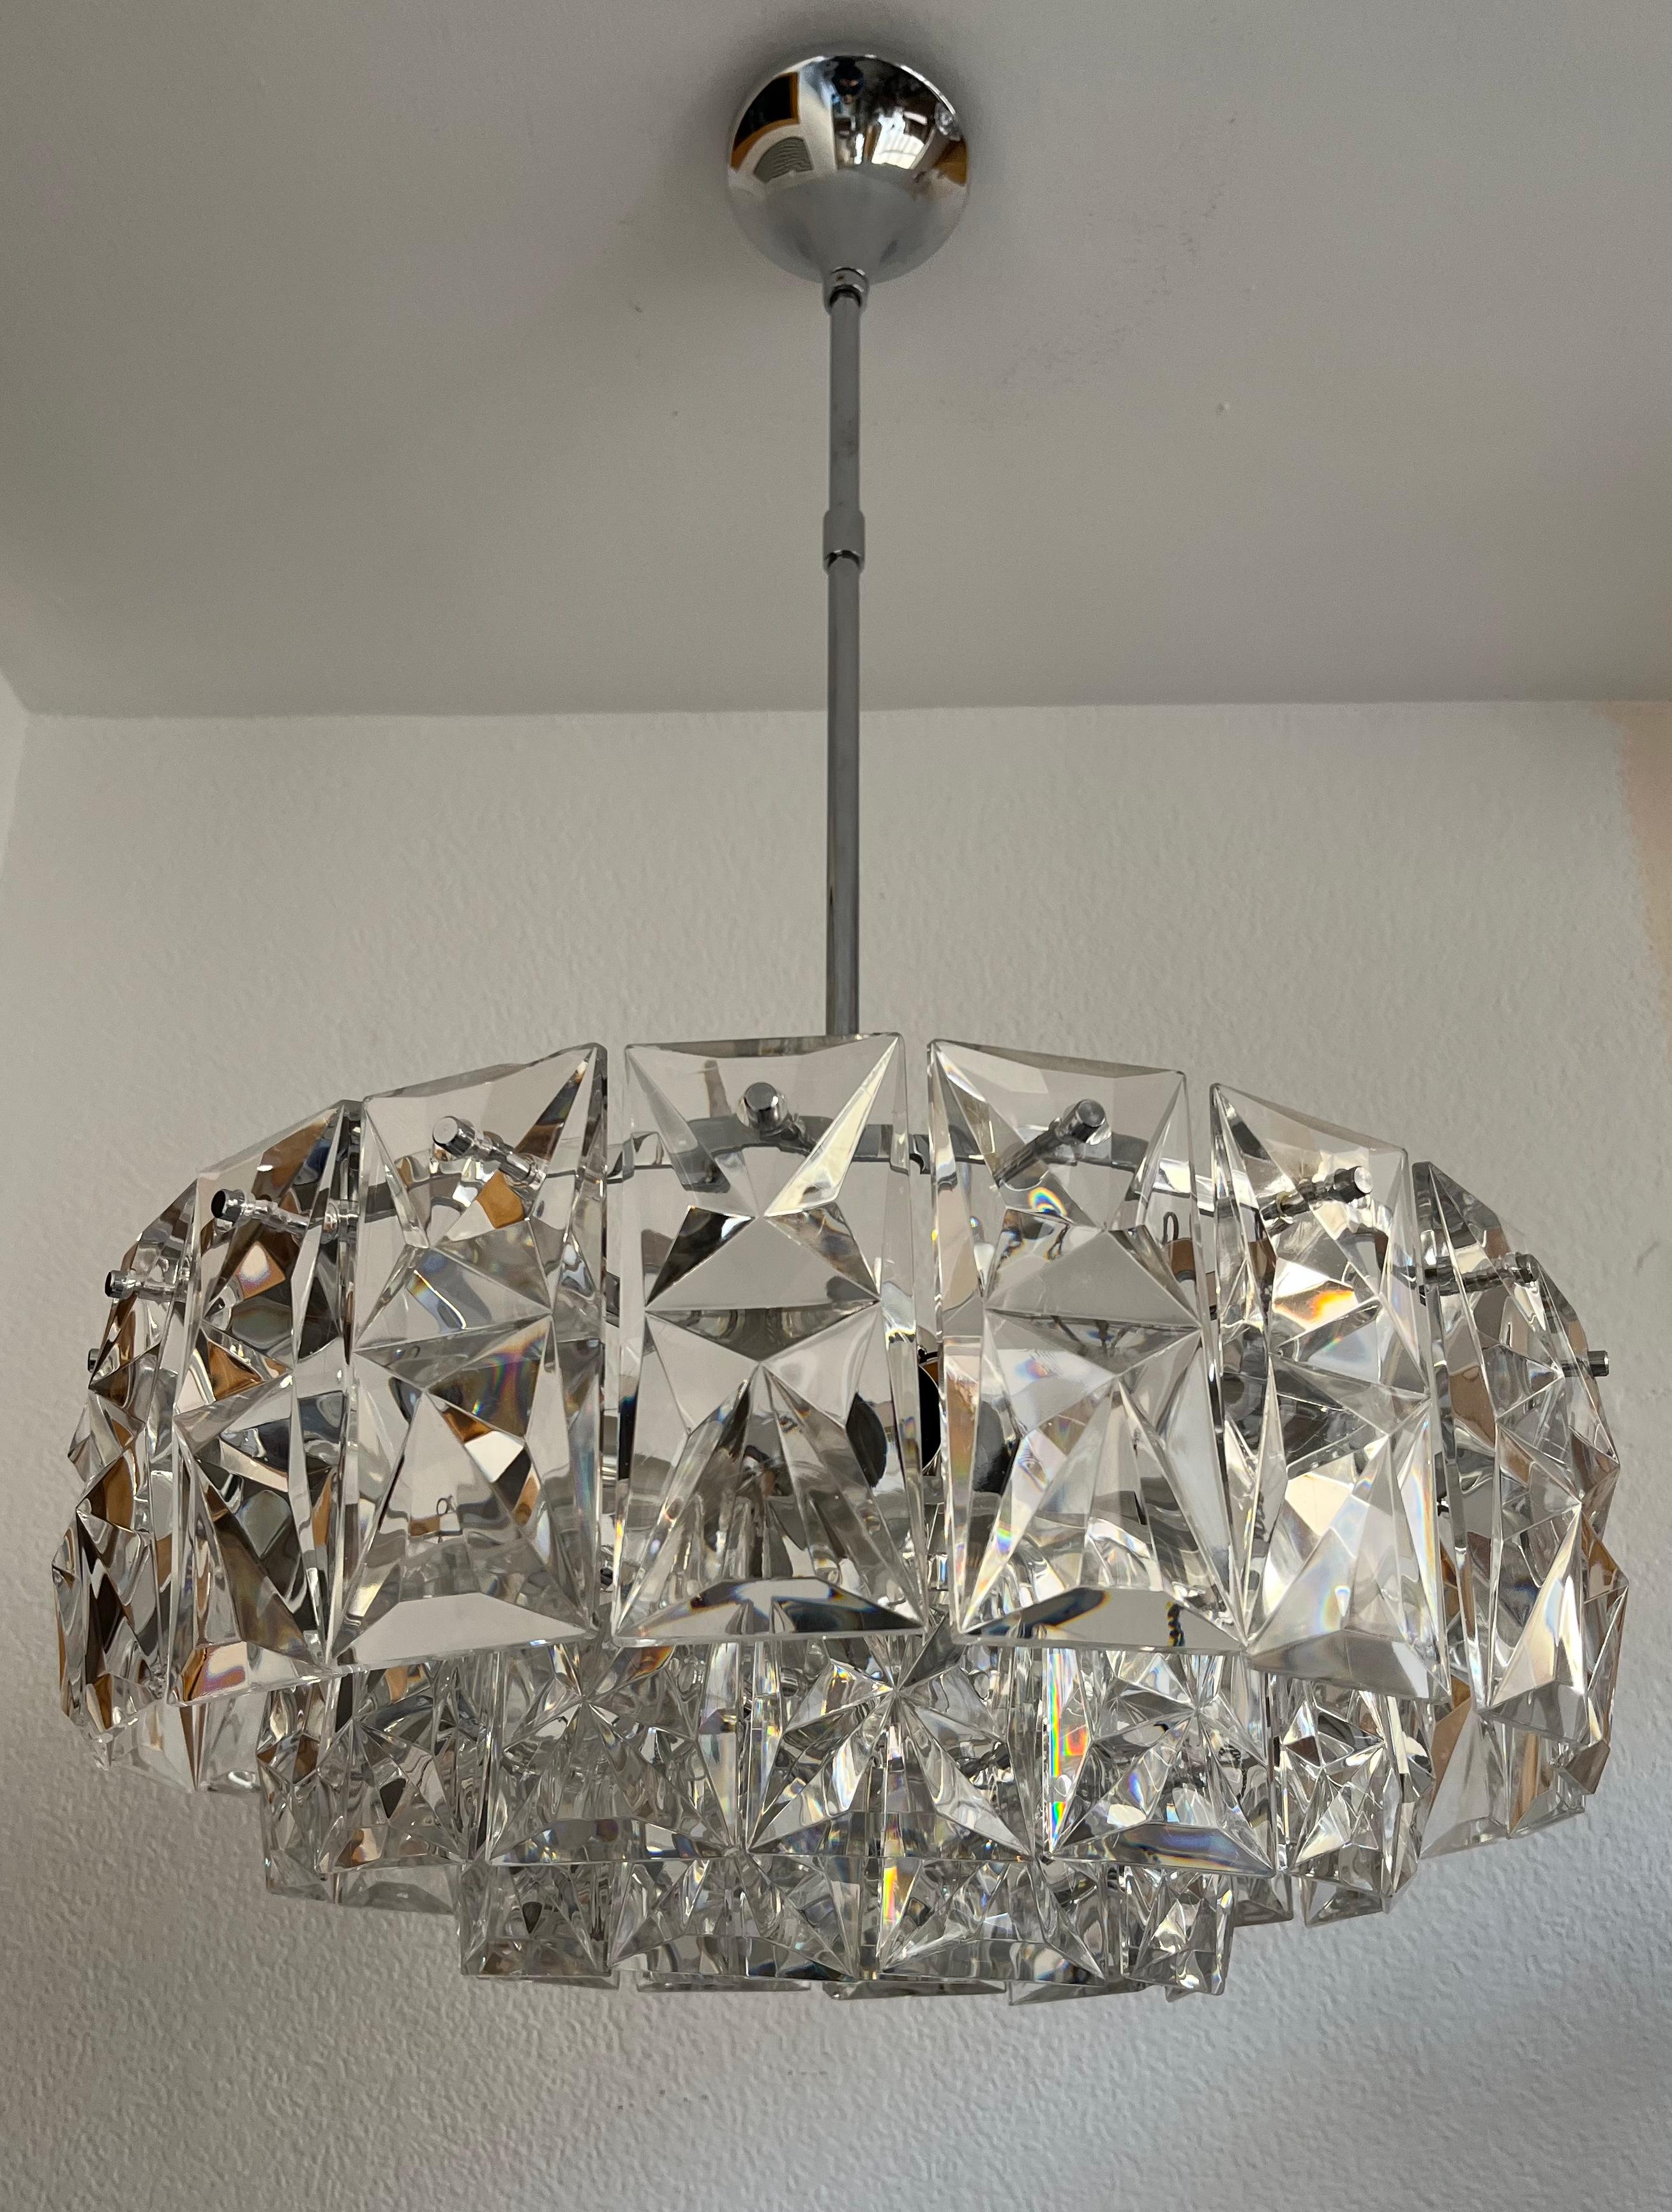 Grand, beau et magnifique lustre Kinkeldey en cristal allemand du milieu du siècle. Ce lustre a été conçu et fabriqué en Allemagne dans les années 1970 par Kinkeldey Leuchten.
Ce lustre est composé de 50 unités de cristaux et d'une structure en